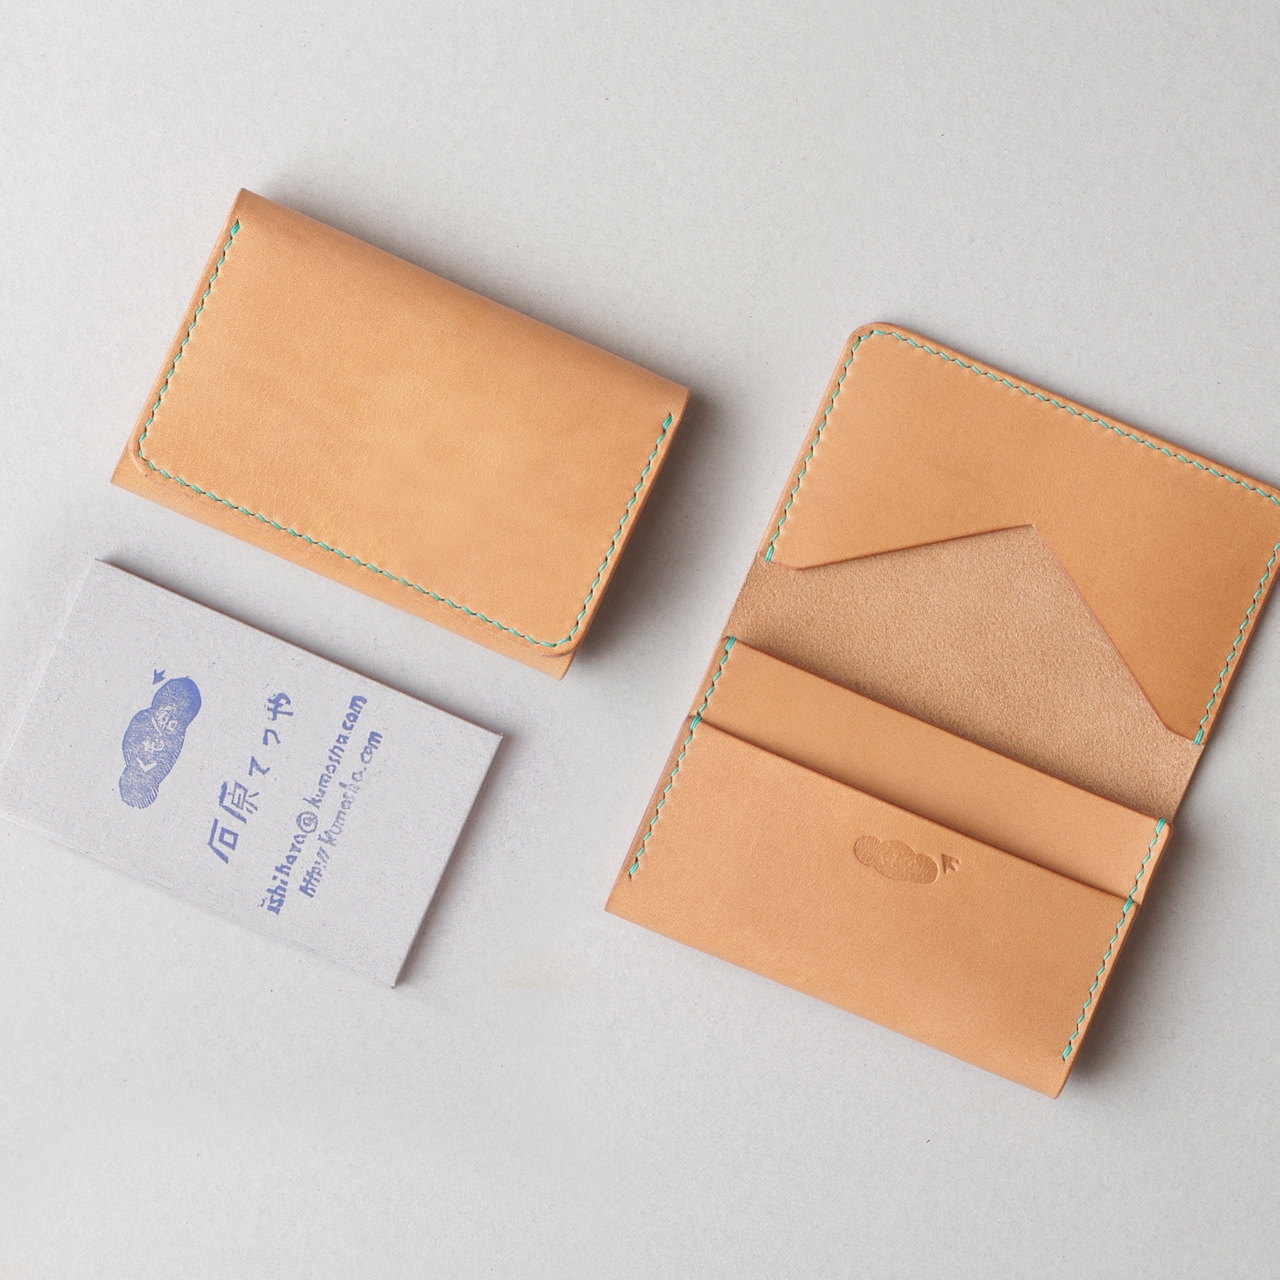 kumosha hand stitched leather card case type 03